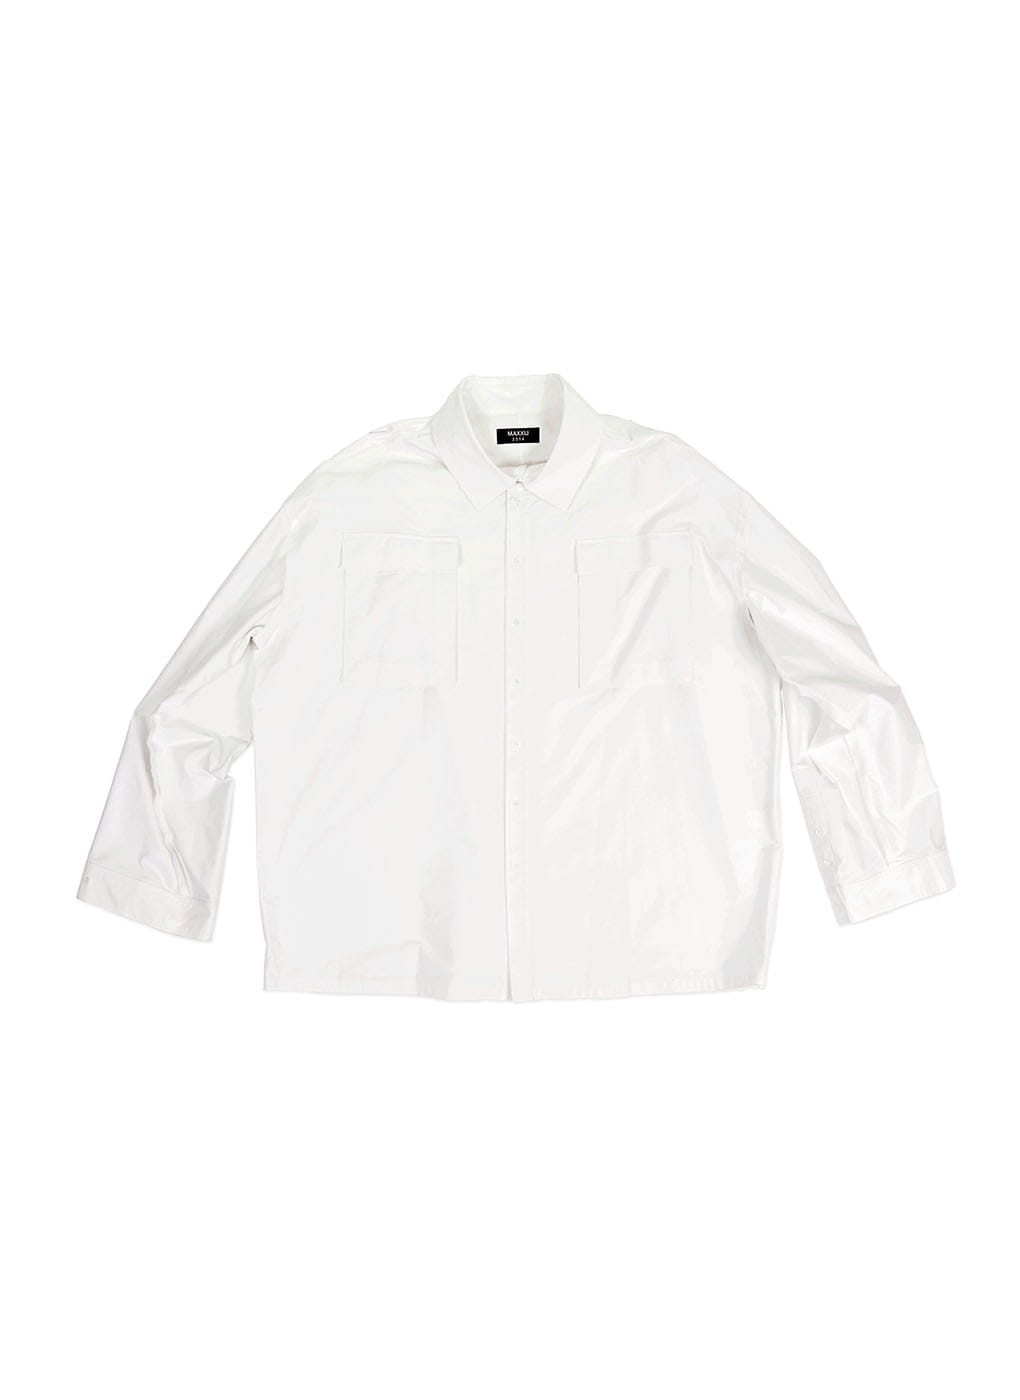 White Supersized Shirt